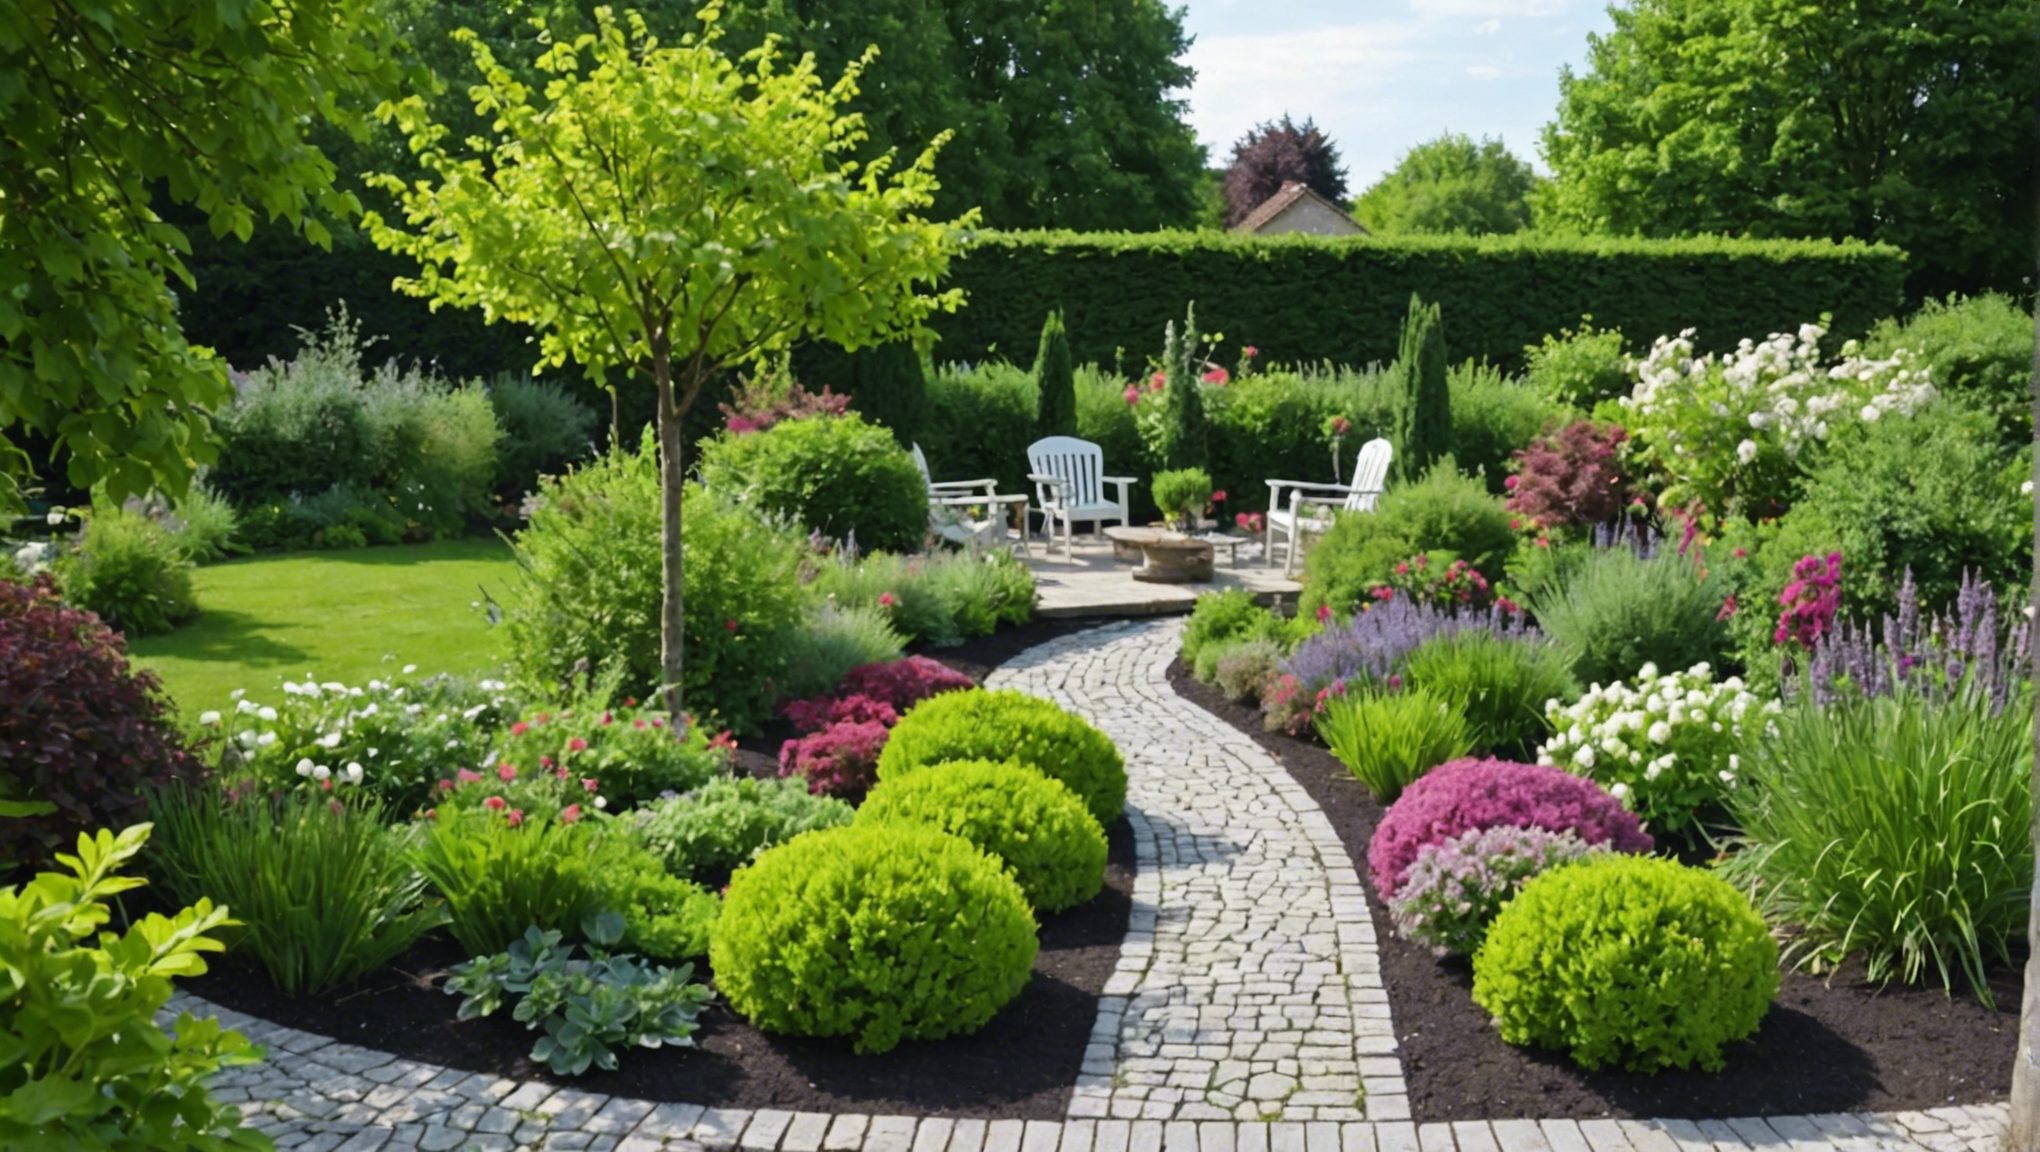 découvrez des idées pour aménager votre jardin de façon imaginatif et pratique. conseils pour un espace extérieur alliant créativité et fonctionnalité.